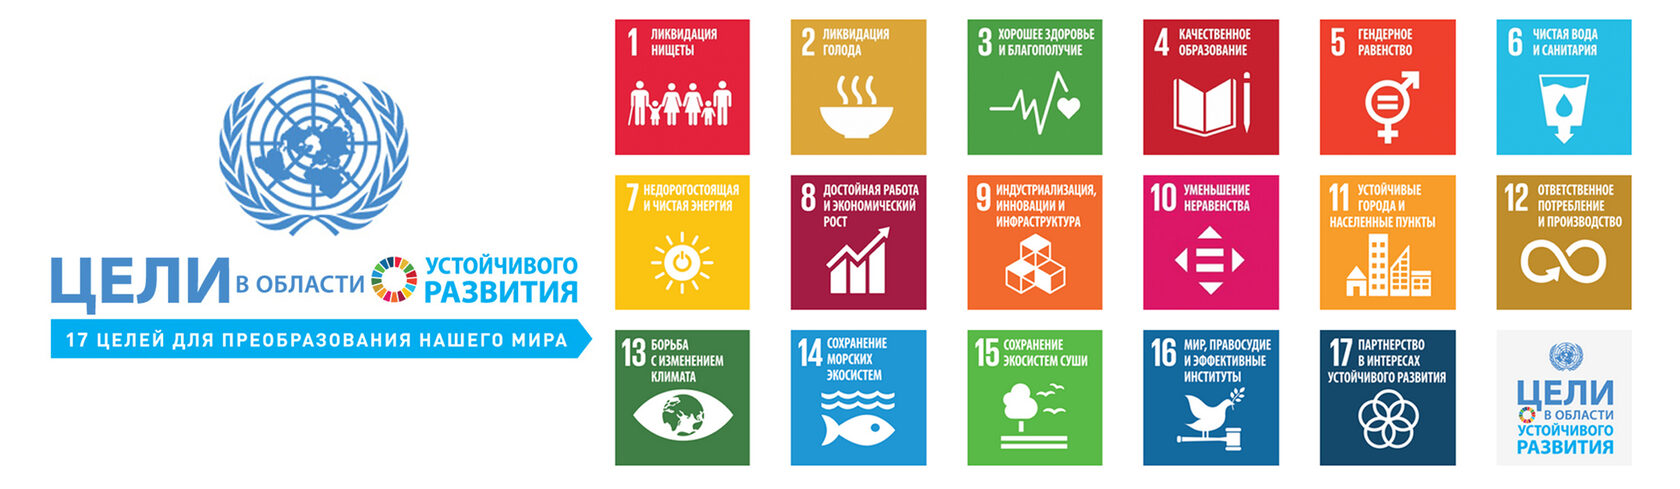 17 устойчивых целей оон. 17 Целей устойчивого развития ООН. ЦУР цели устойчивого развития. Цели ООН В области устойчивого развития. Цели устойчивого развития ООН 2015-2030.